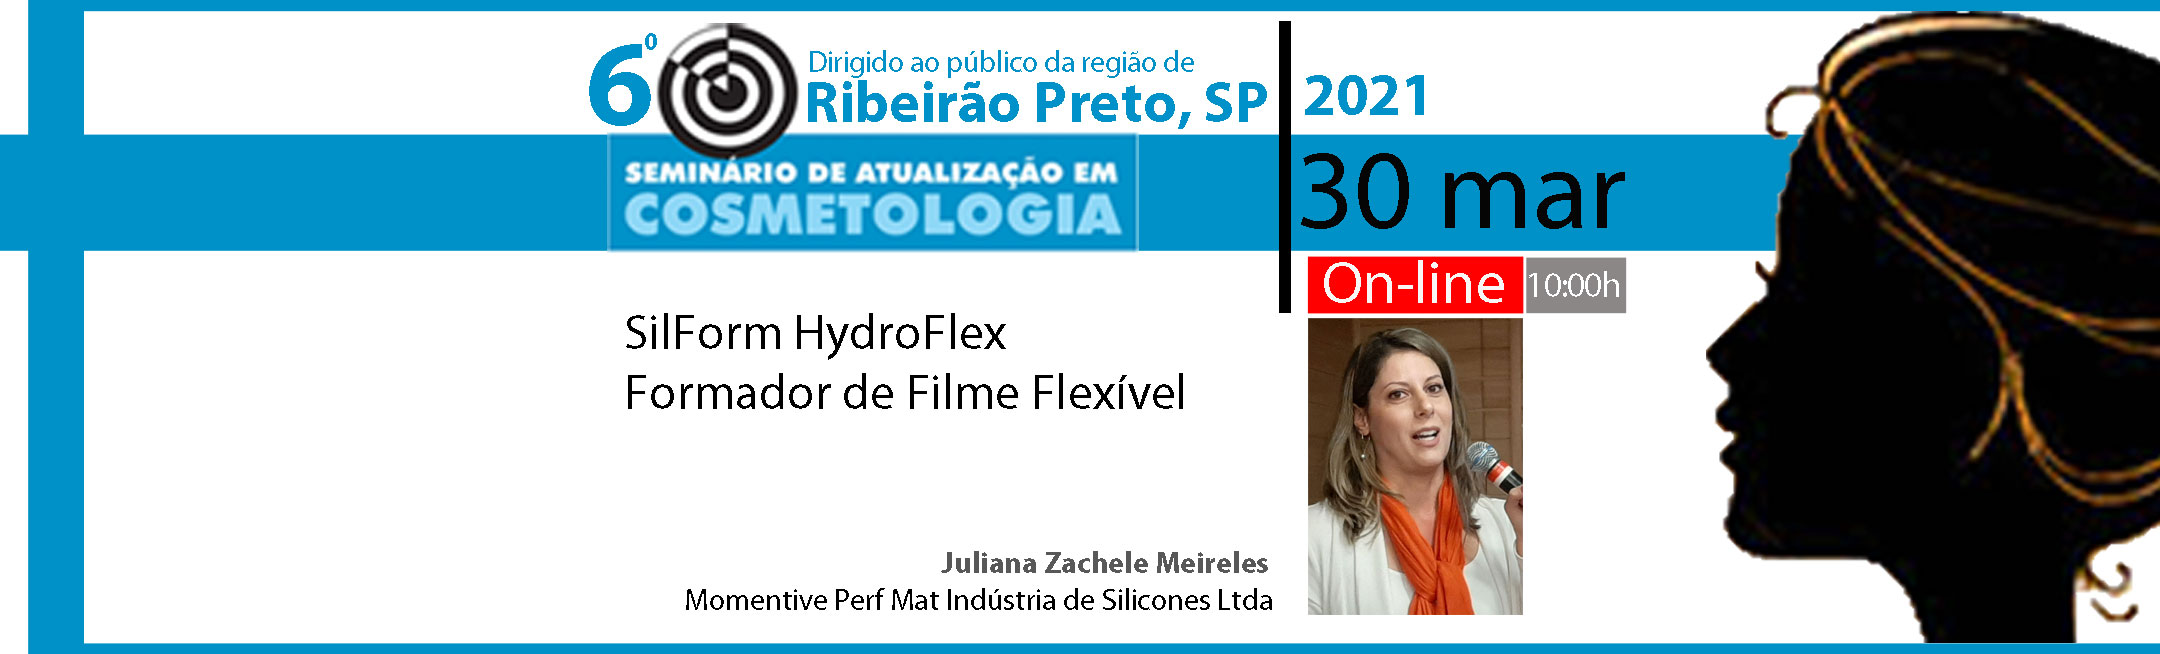 SilForm HydroFlex  Formador de Filme Flexível 